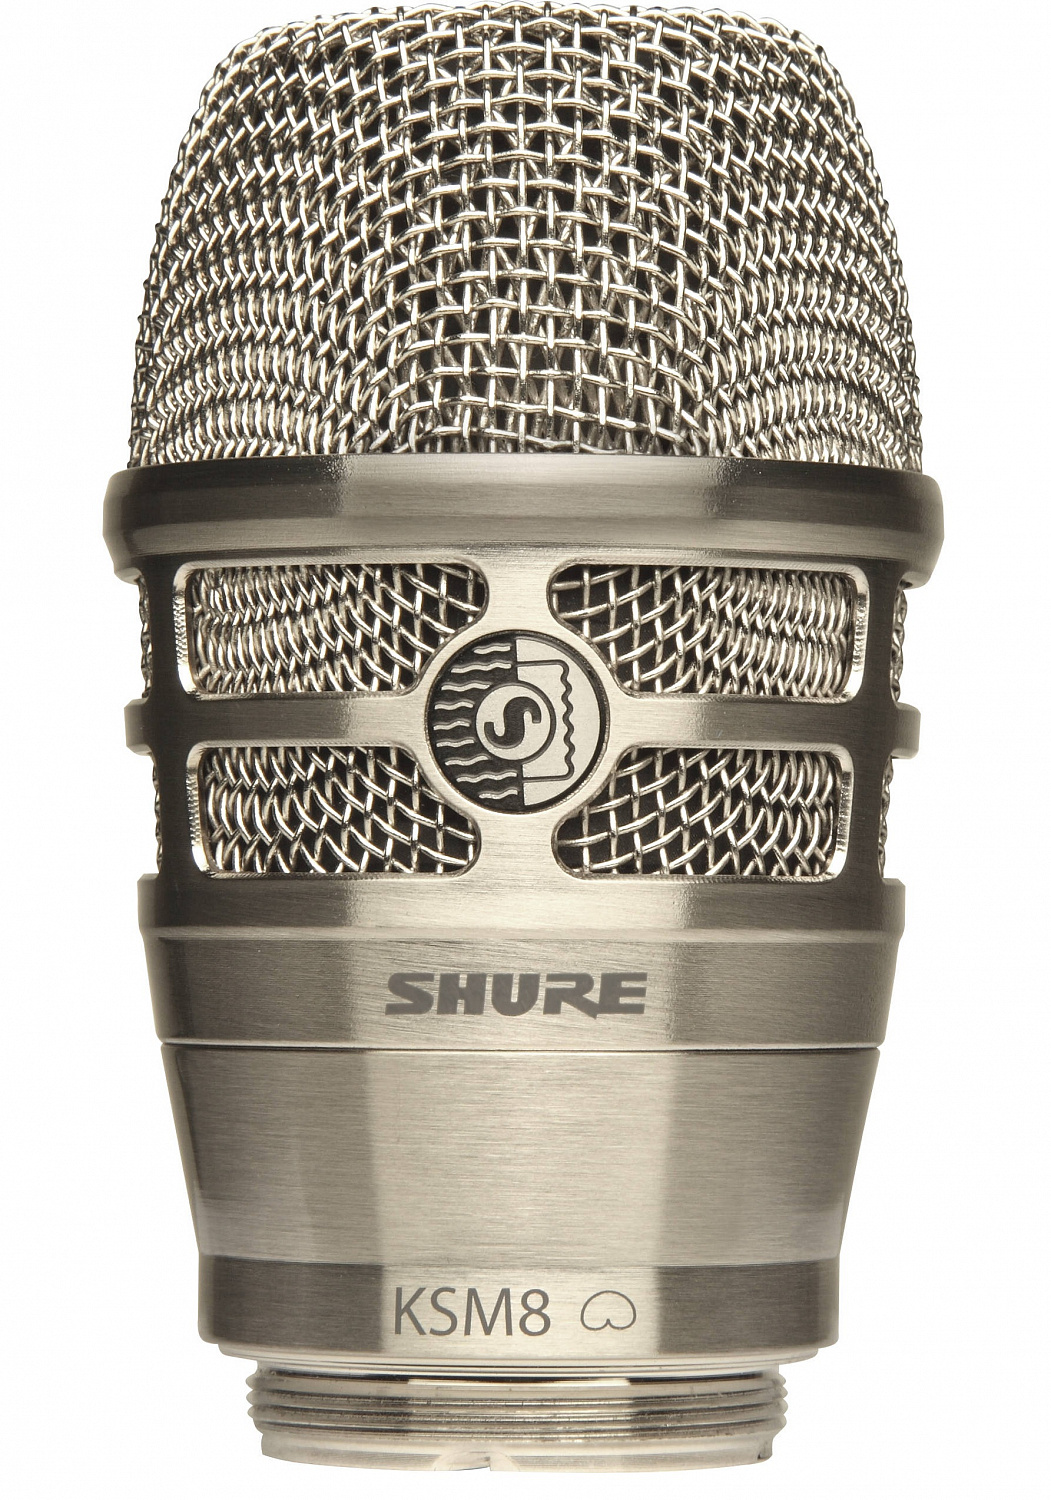 Shure RPW170 микрофонный капсюль для радиомикрофона KSM8 динамический кардиоидный с двойной диафрагмой, серебристый